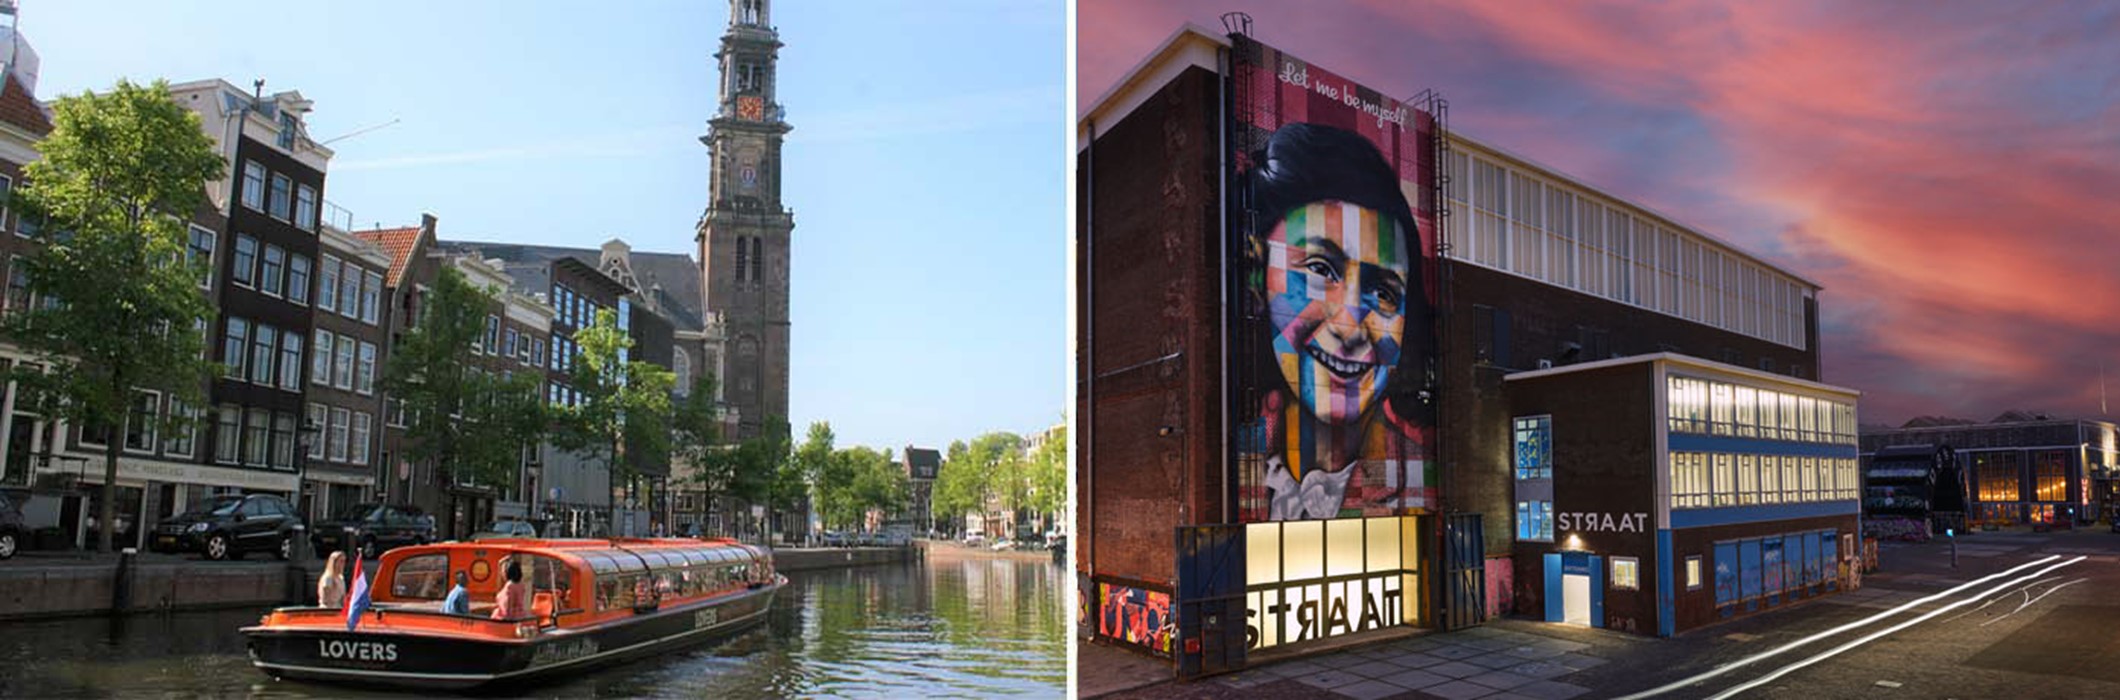 Musée STRAAT + Croisière sur les canaux d'Amsterdam